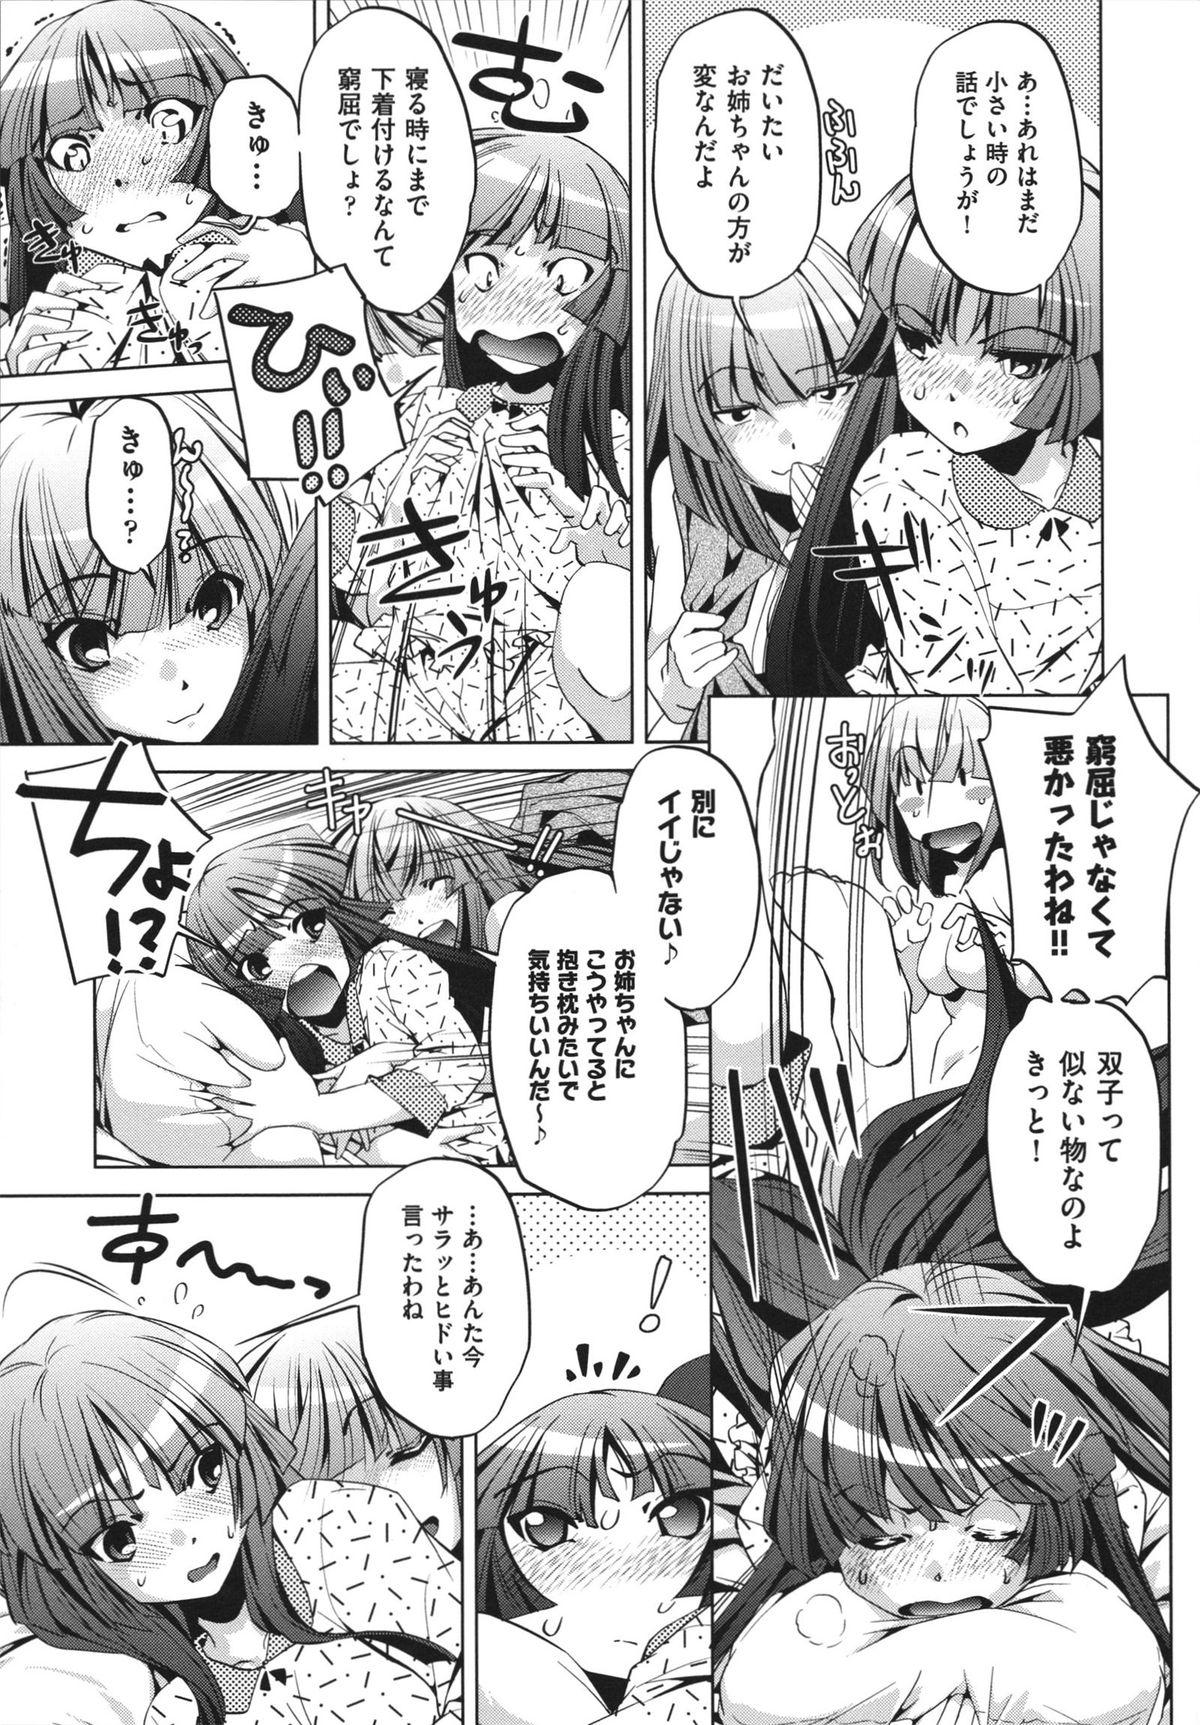 [Ootori Ryuuji] Shokushu wa Yawarakana Chibusa ni Makitsuki Onna-tachi no Ana wo Kakimidasu - Feeler coils around a soft breast and violates women's hole. 59